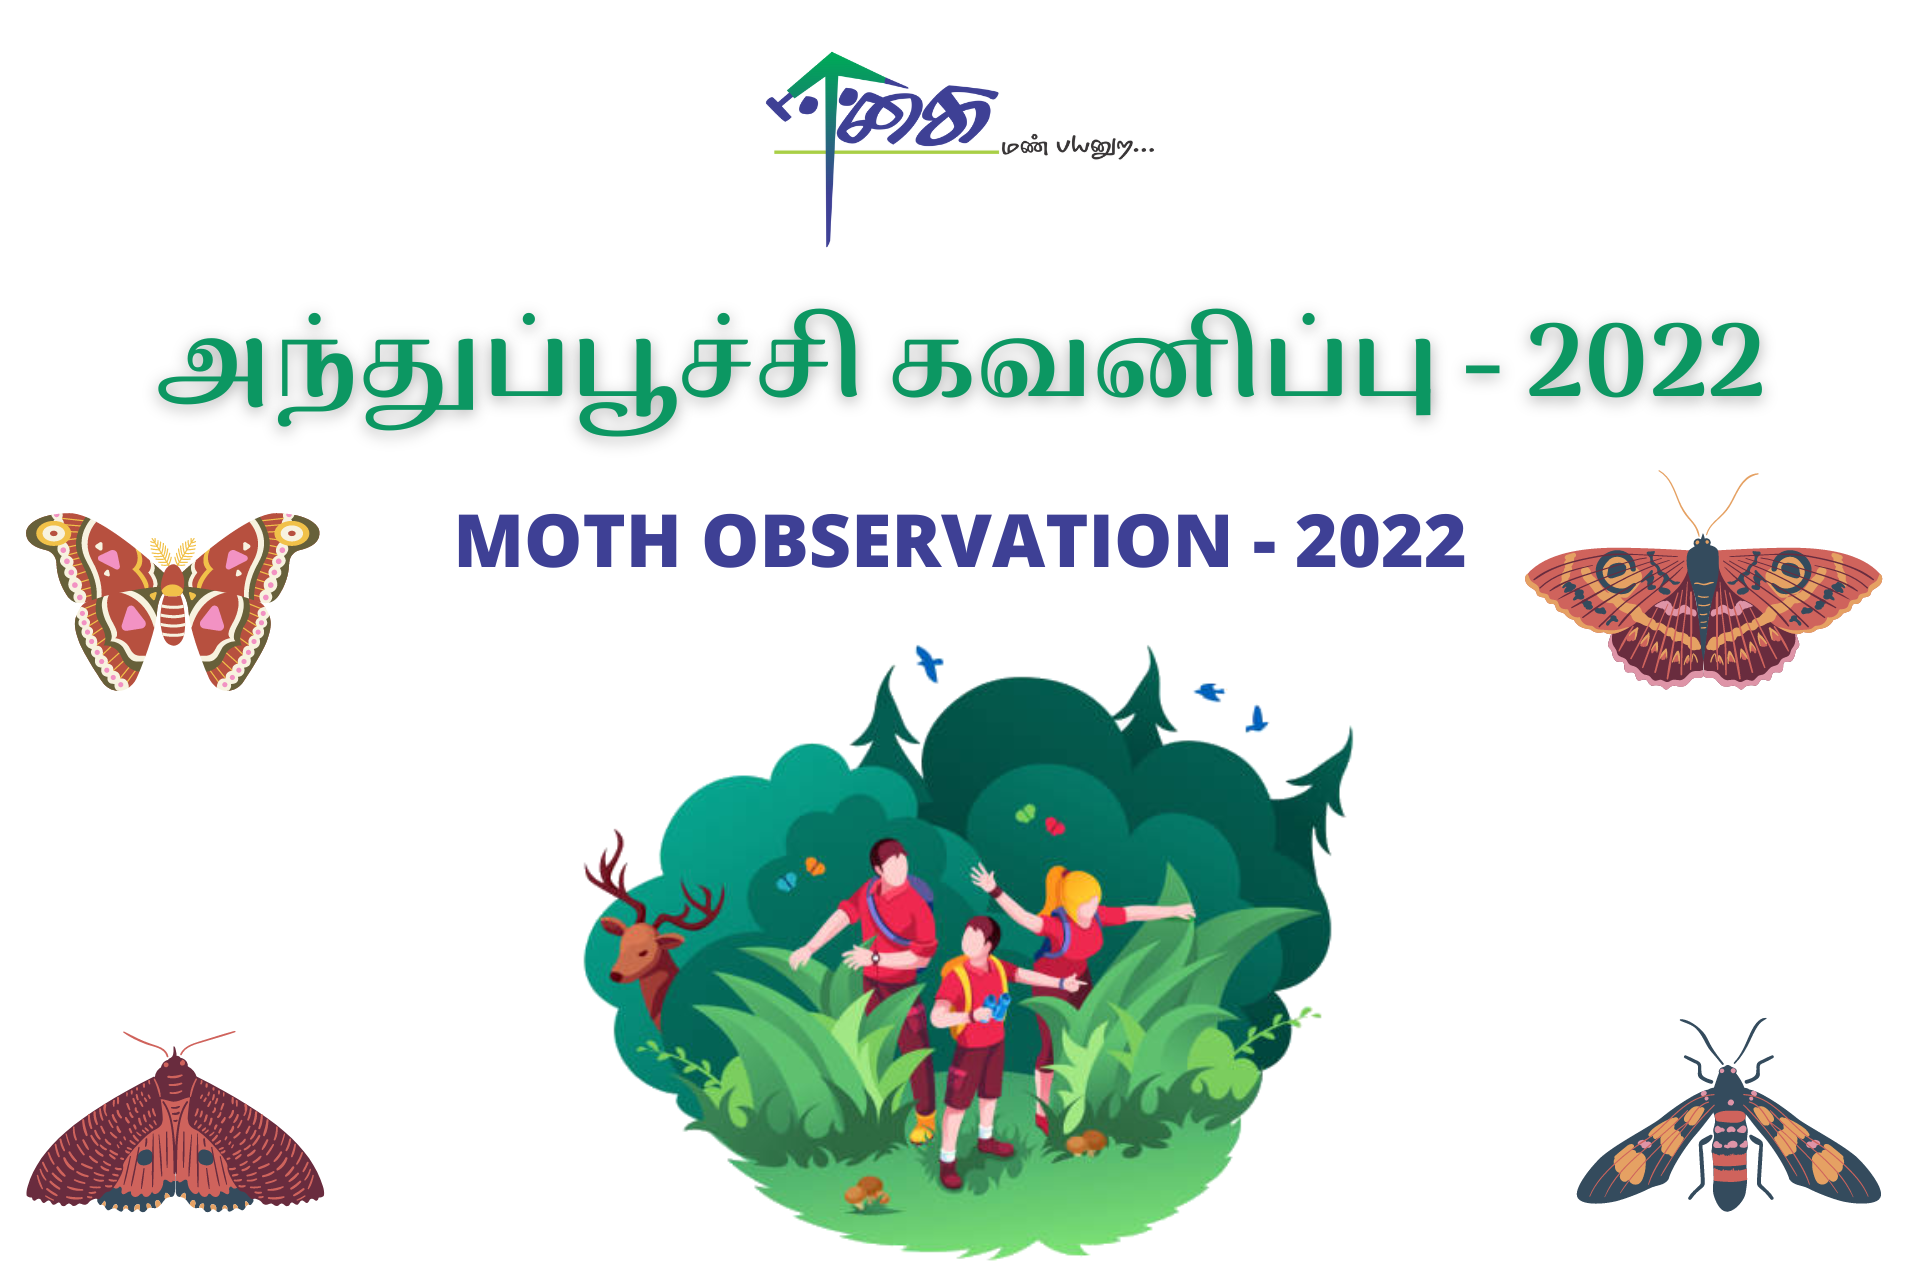 Moth Survey Kuralkuttai village - 2022